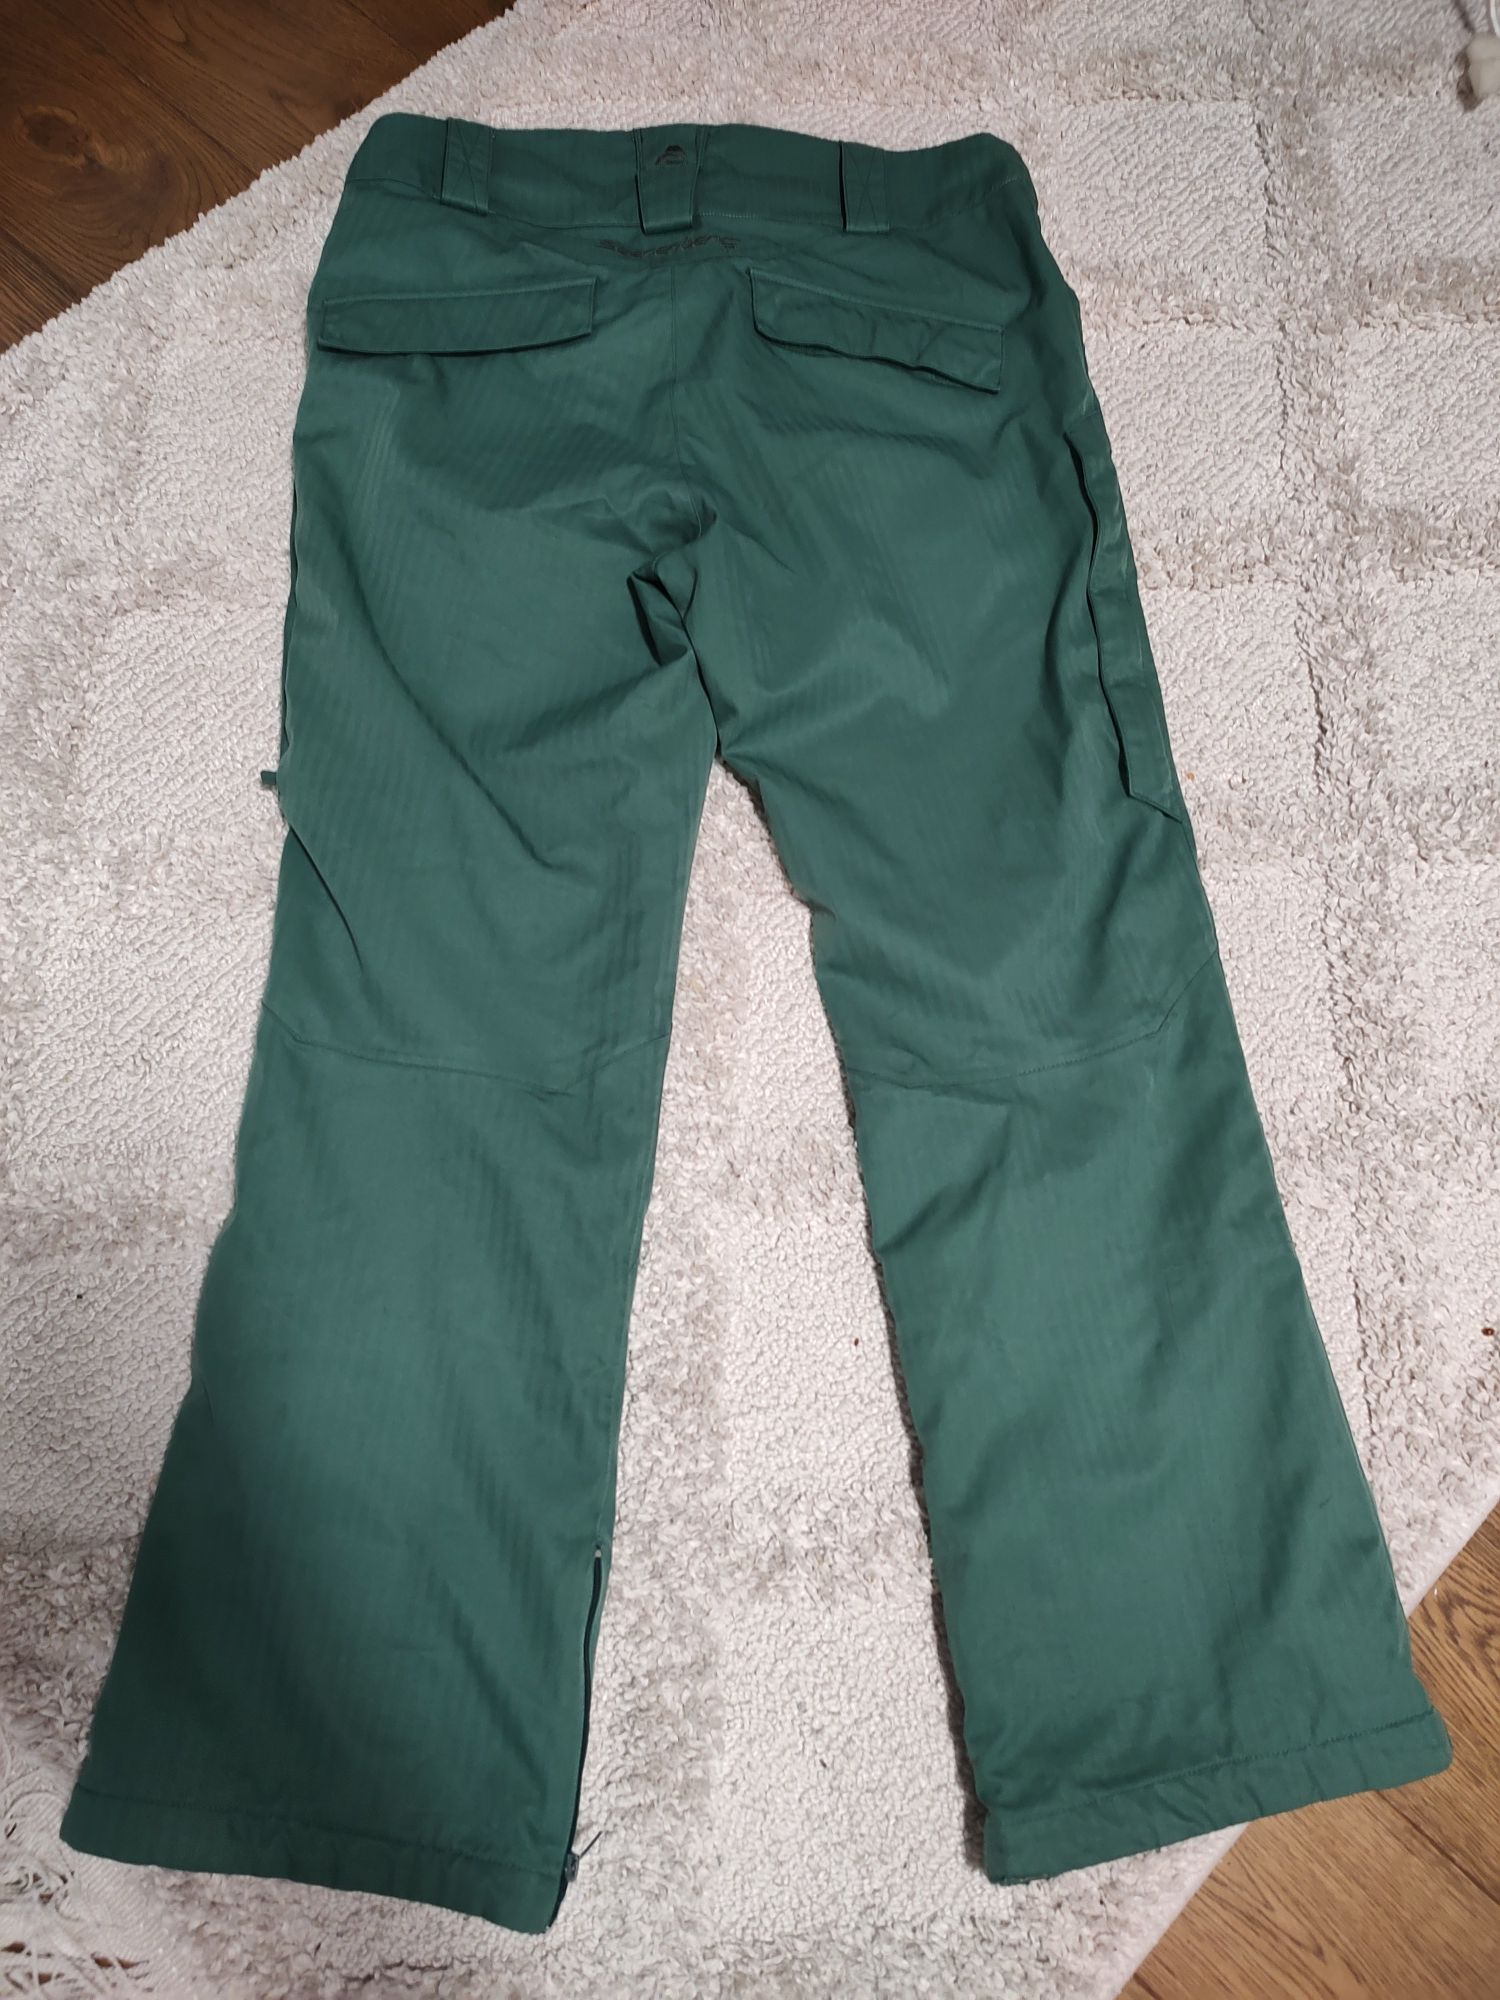 Beerenberg spodnie snowboardowe L zielone męskie